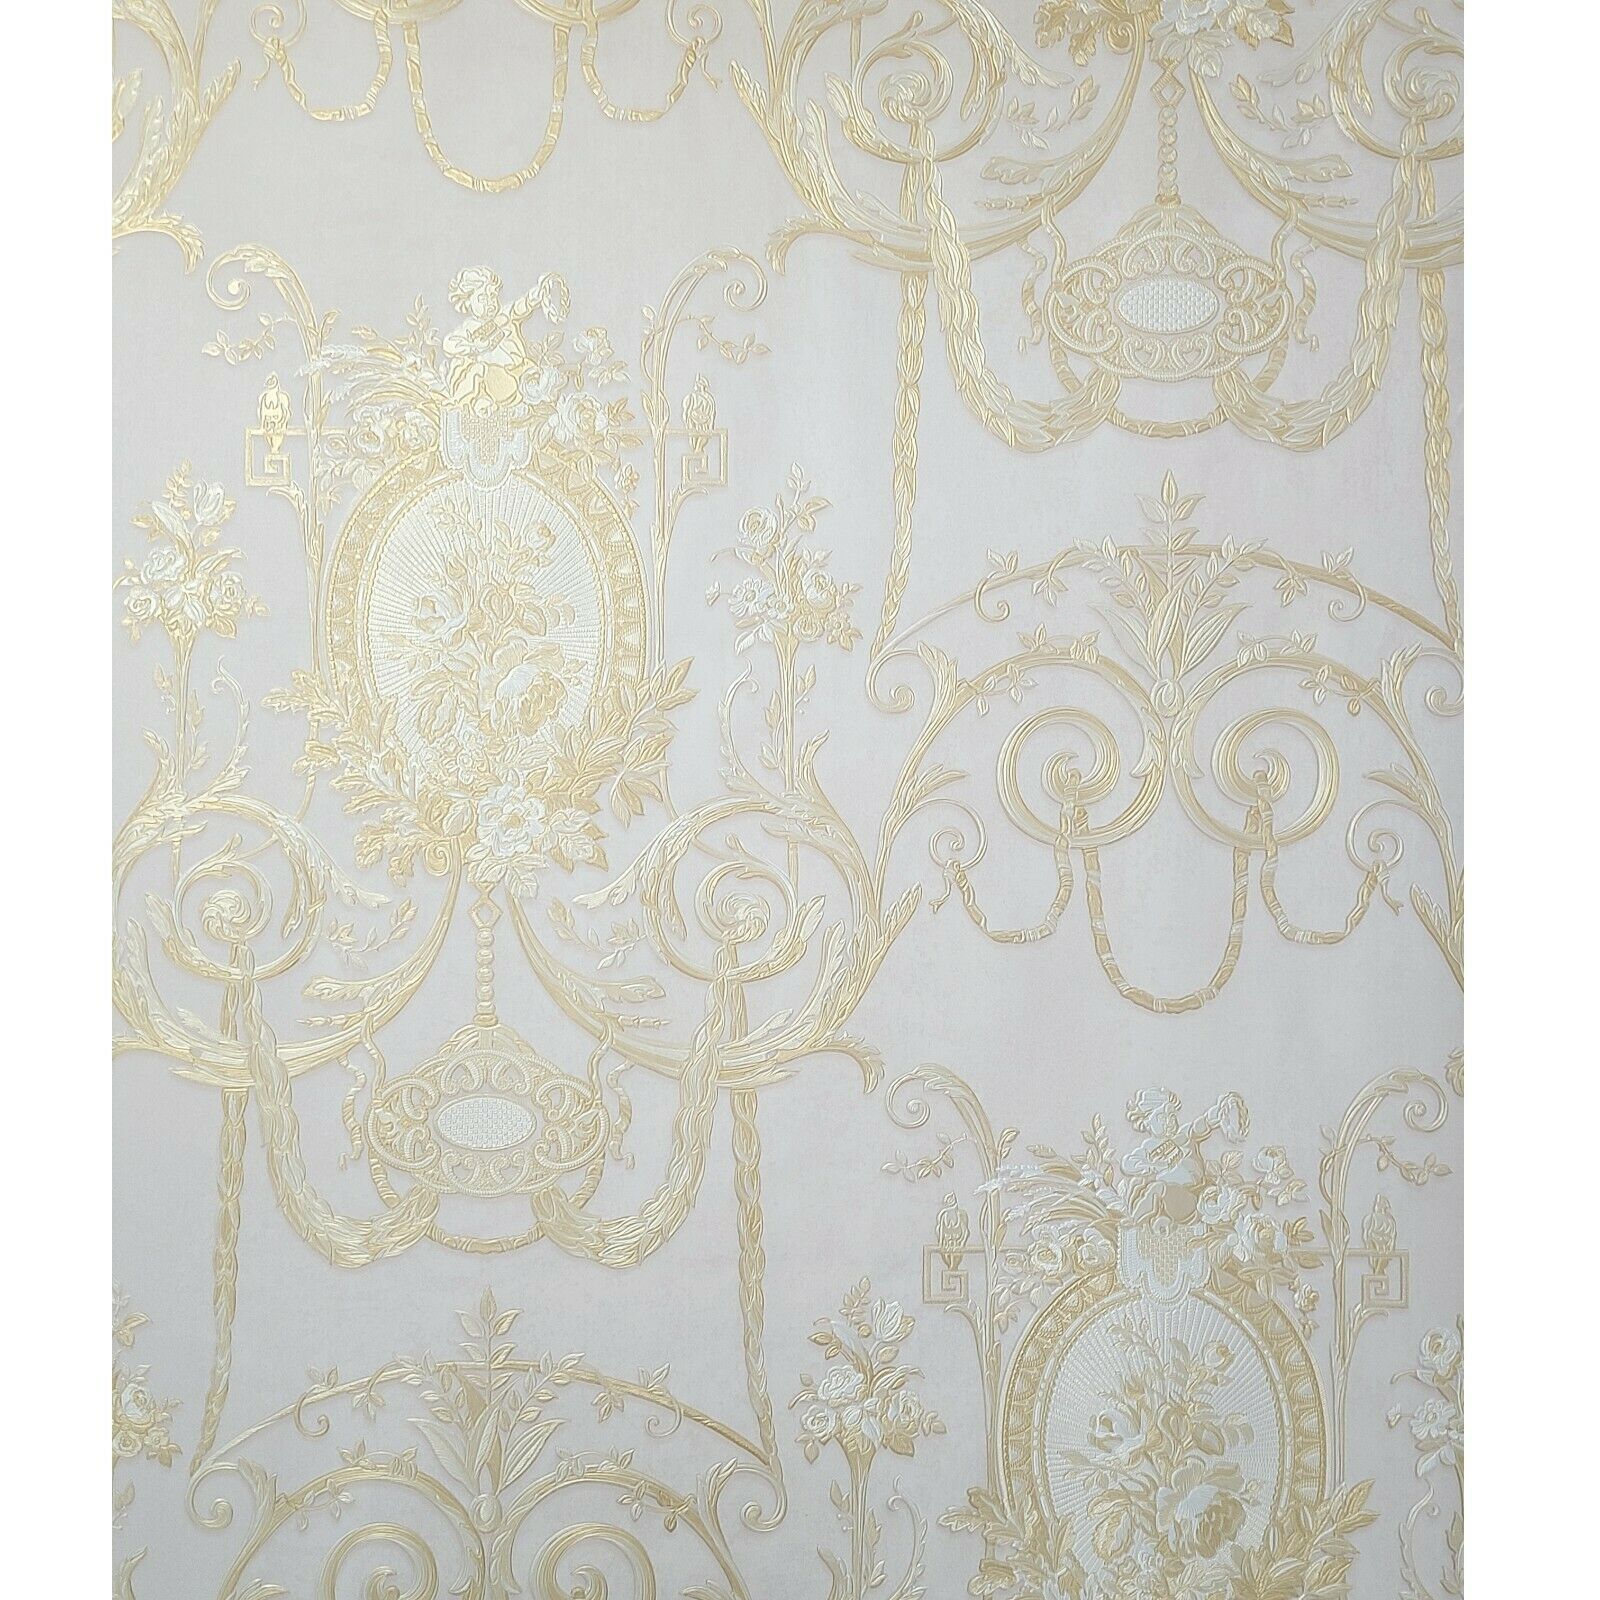 https://wallcoveringsmart.com/cdn/shop/products/WMBL1007301-Floral-Beige-cream-Gold-toile-damask-Victorian-Wallpaper-5.jpg?v=1614945976